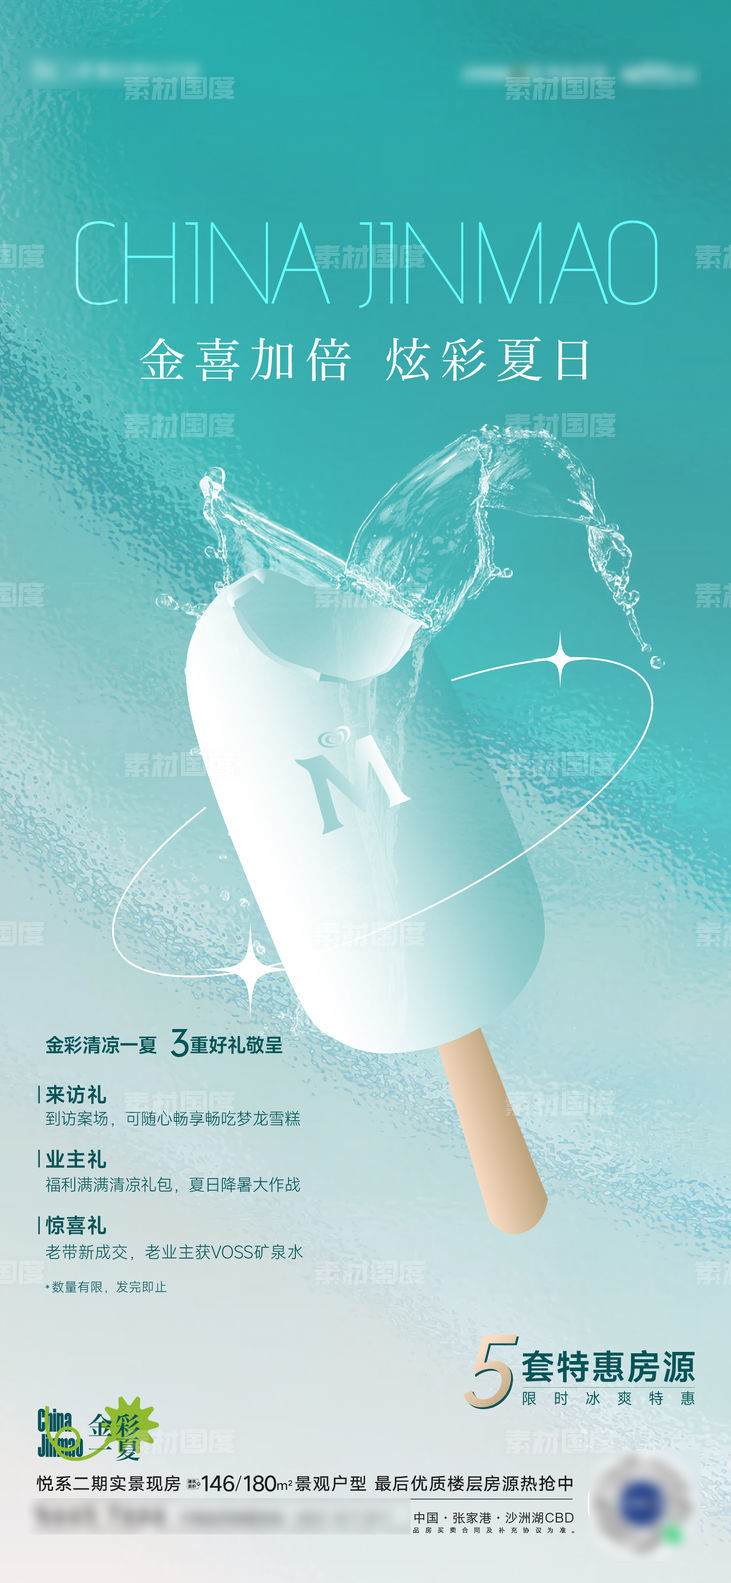 夏天梦龙冰淇淋活动海报